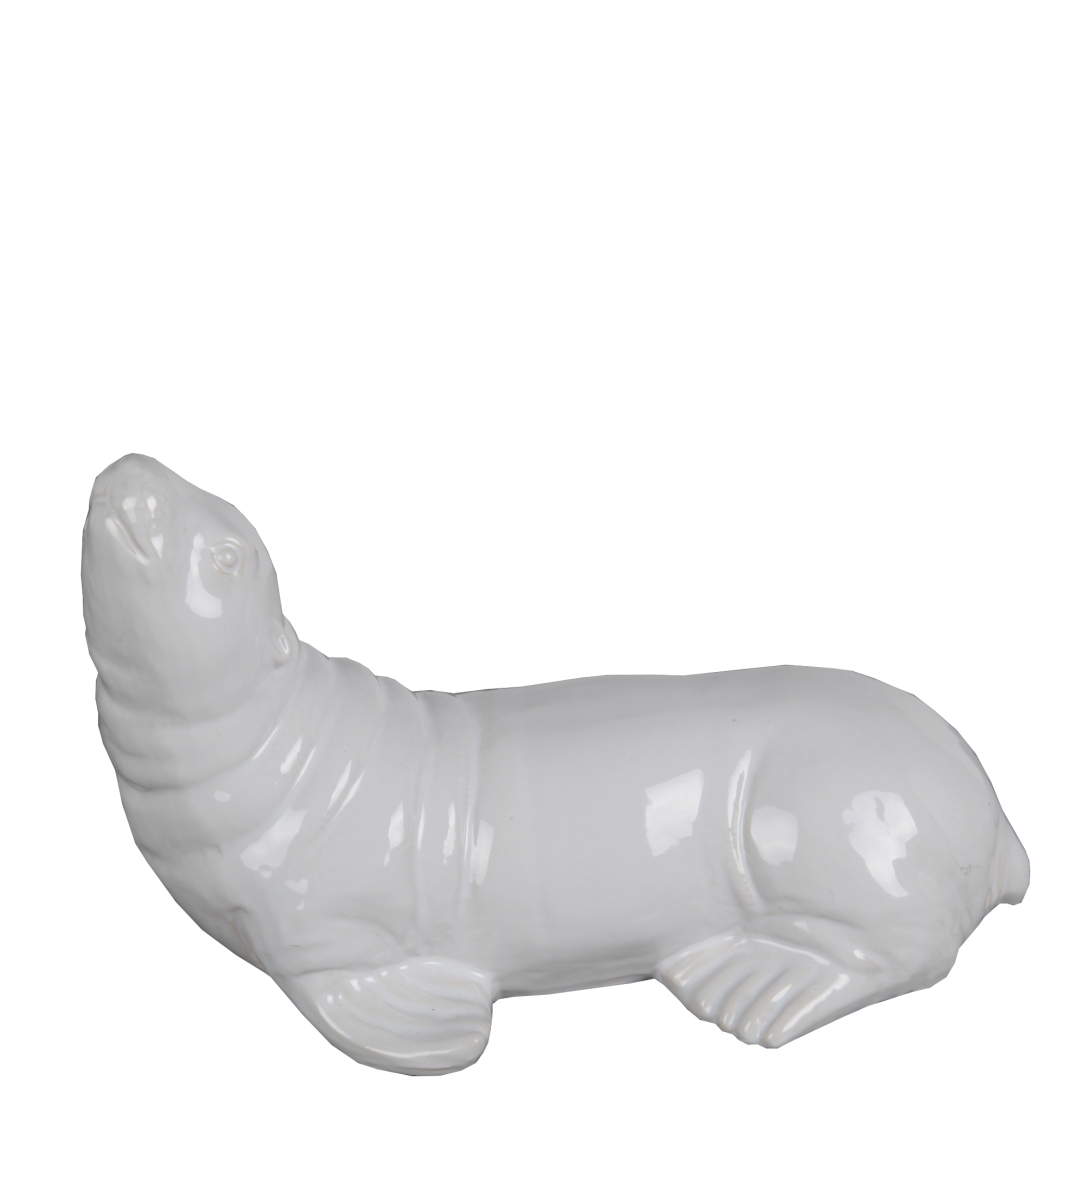 14 X 8.5 X 9.5 In. Ceramic Sea Lion Figurine, White